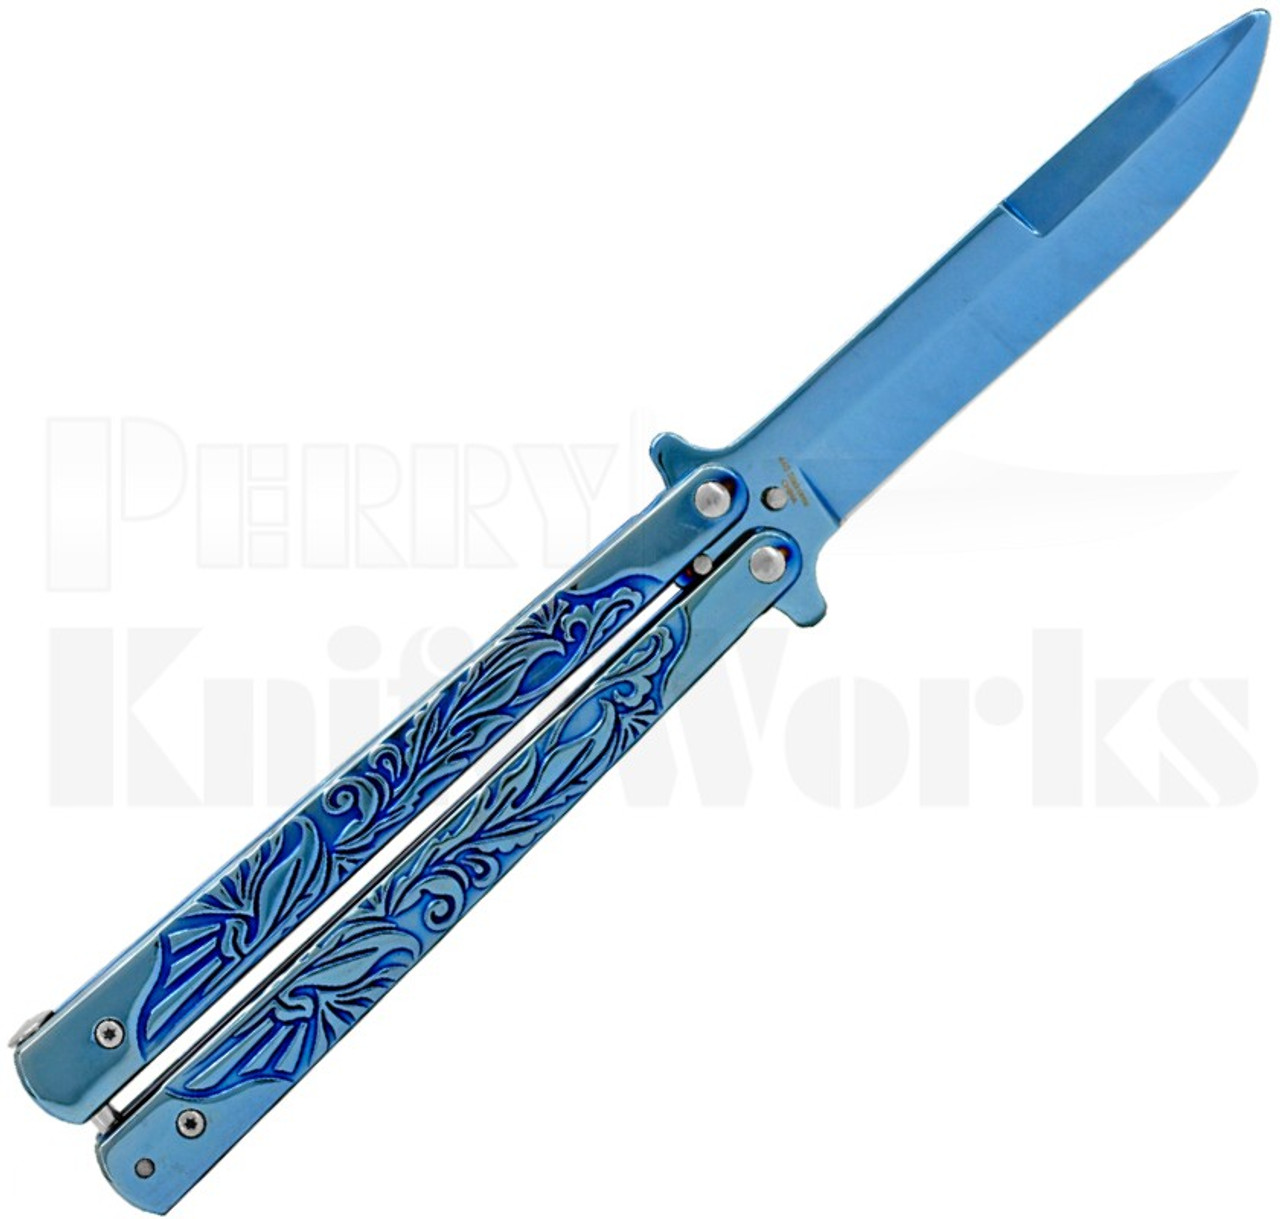 Striker Balisong Butterfly Knife Blue Scroll